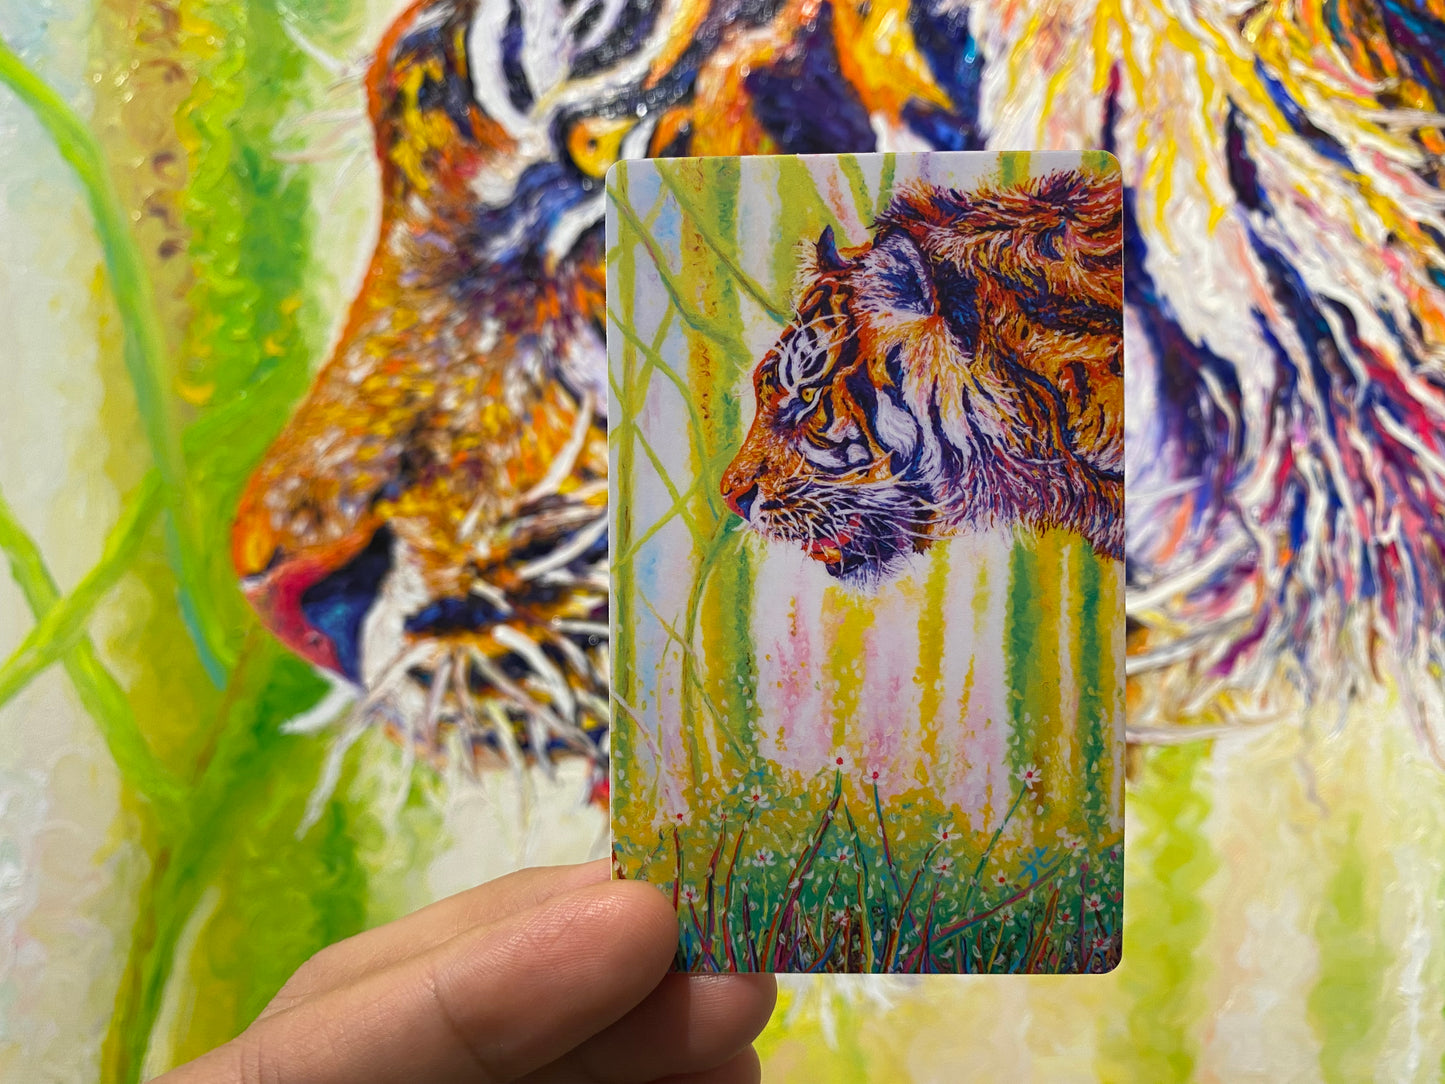 "Tiger in the woods" - Weatherproof Matt vinyl Sticker